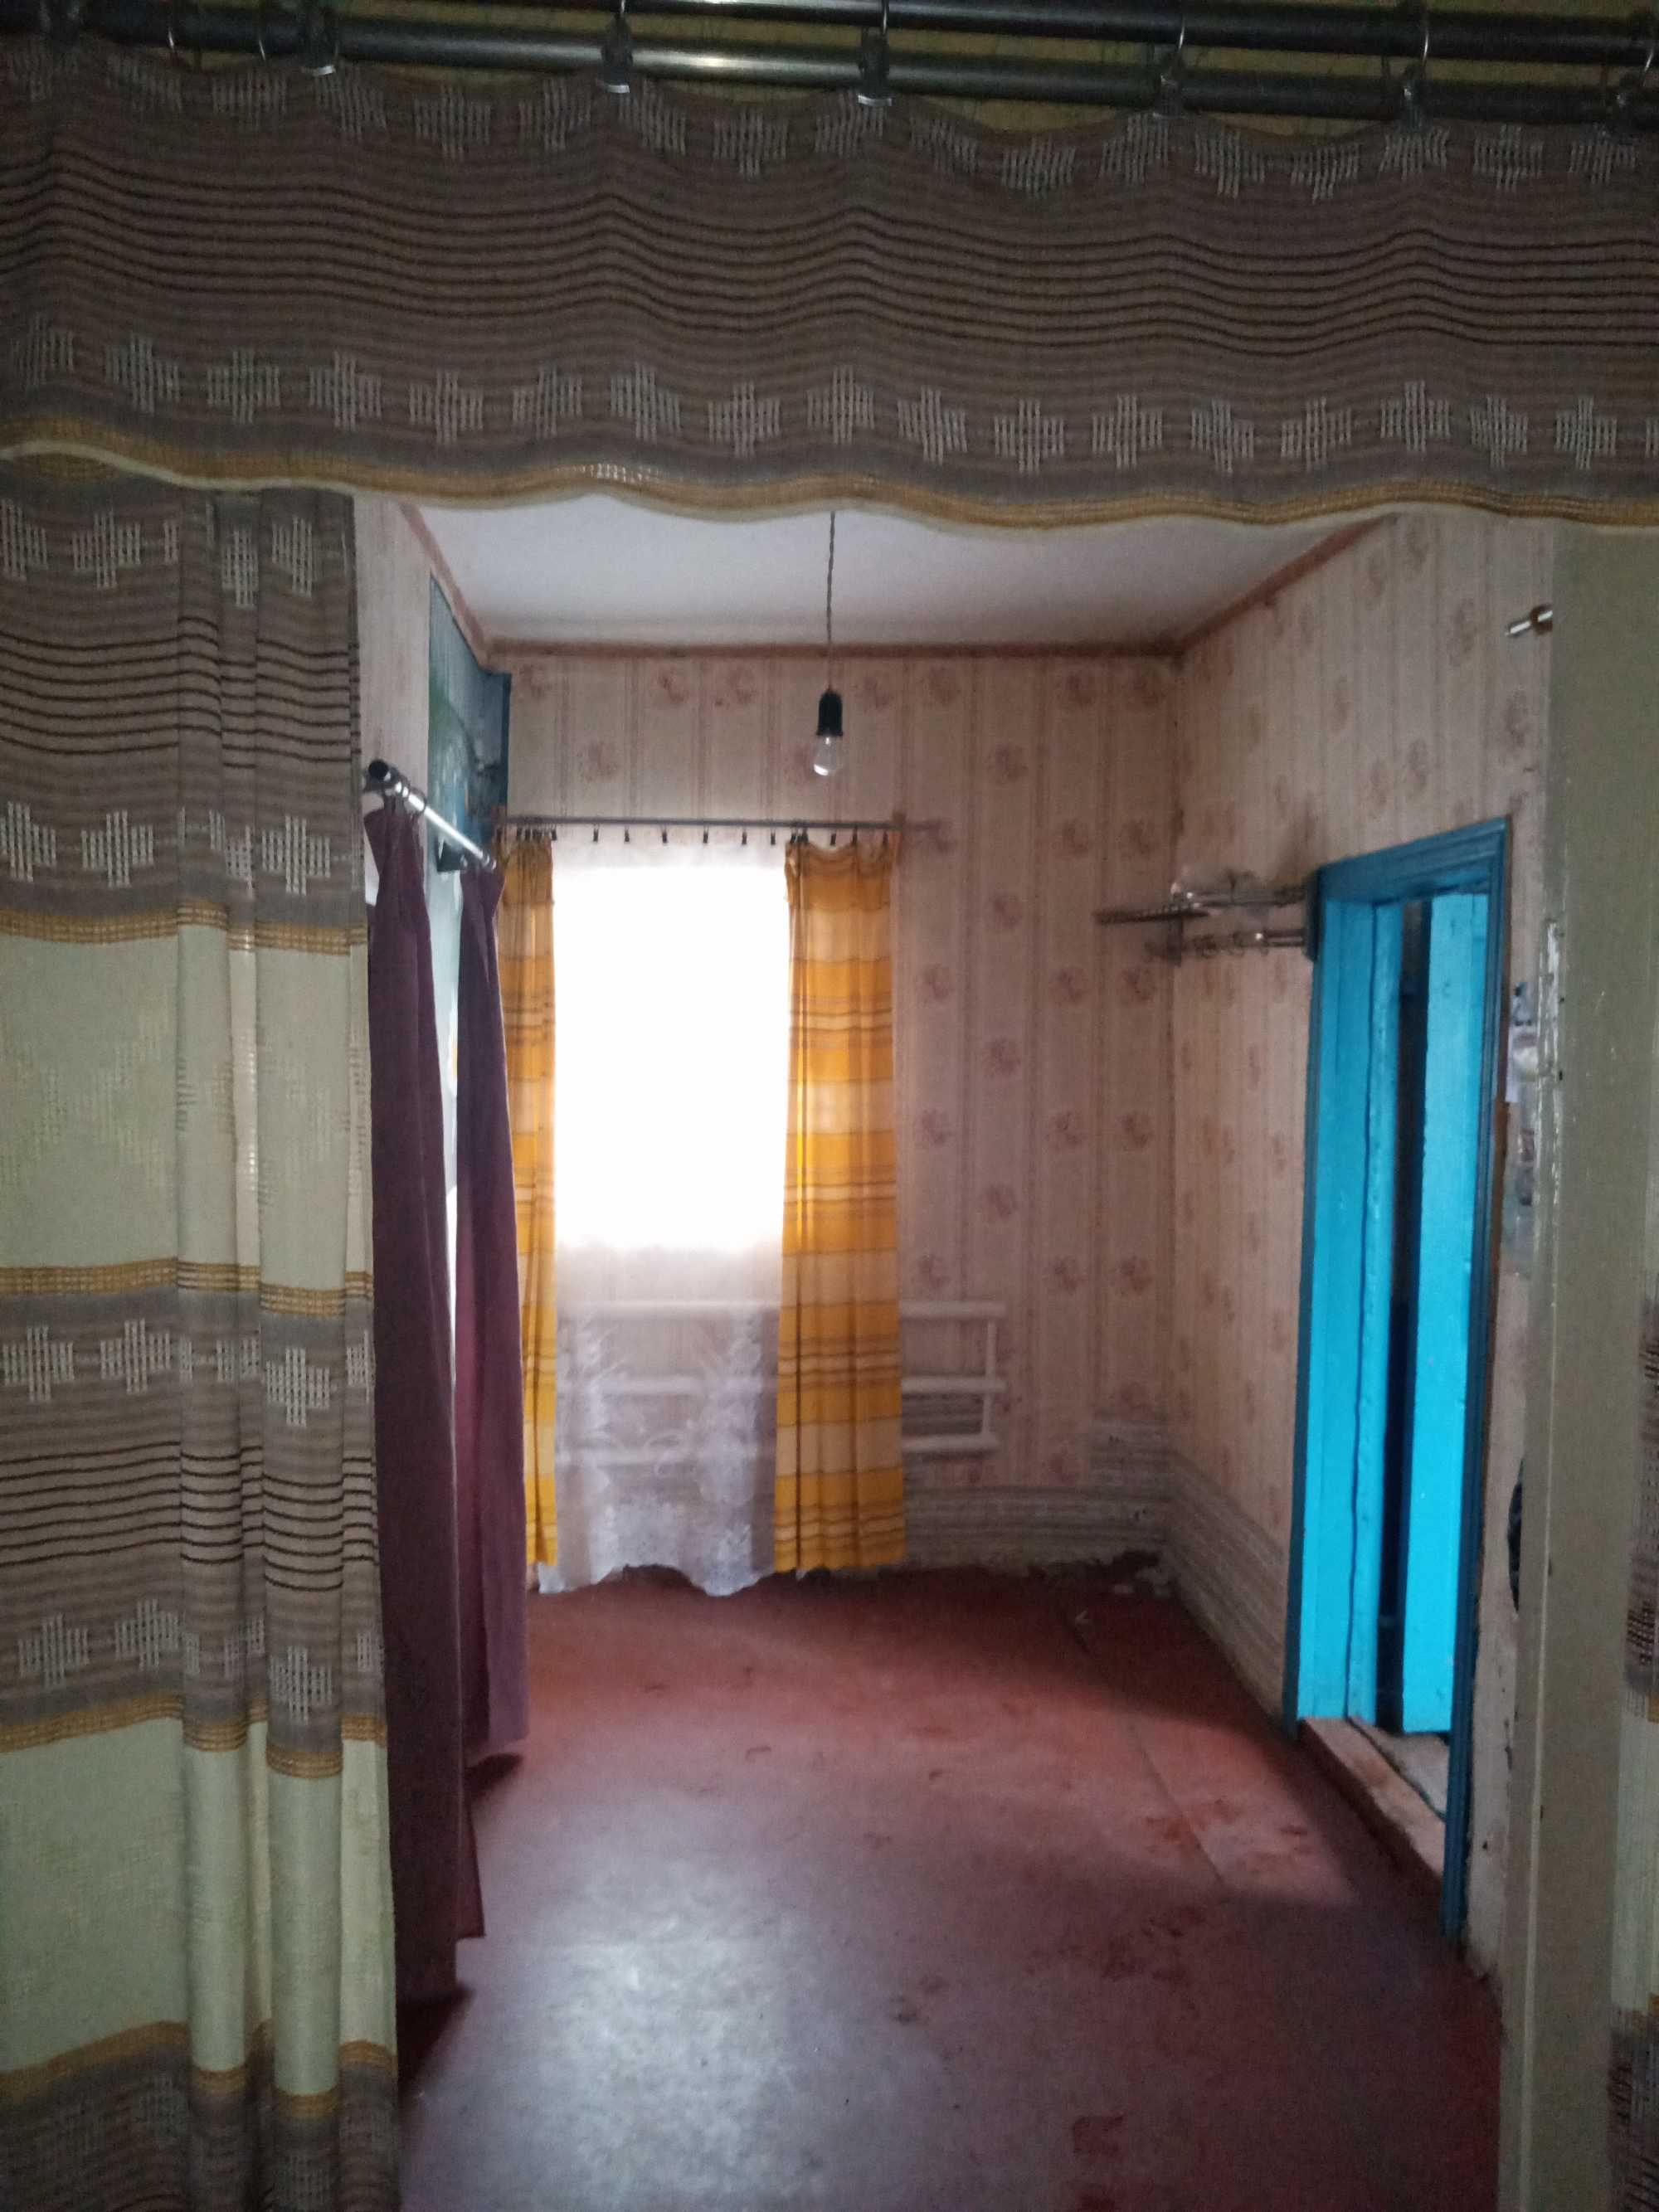 Продам будинок в с. Калинівка Полтавського району.